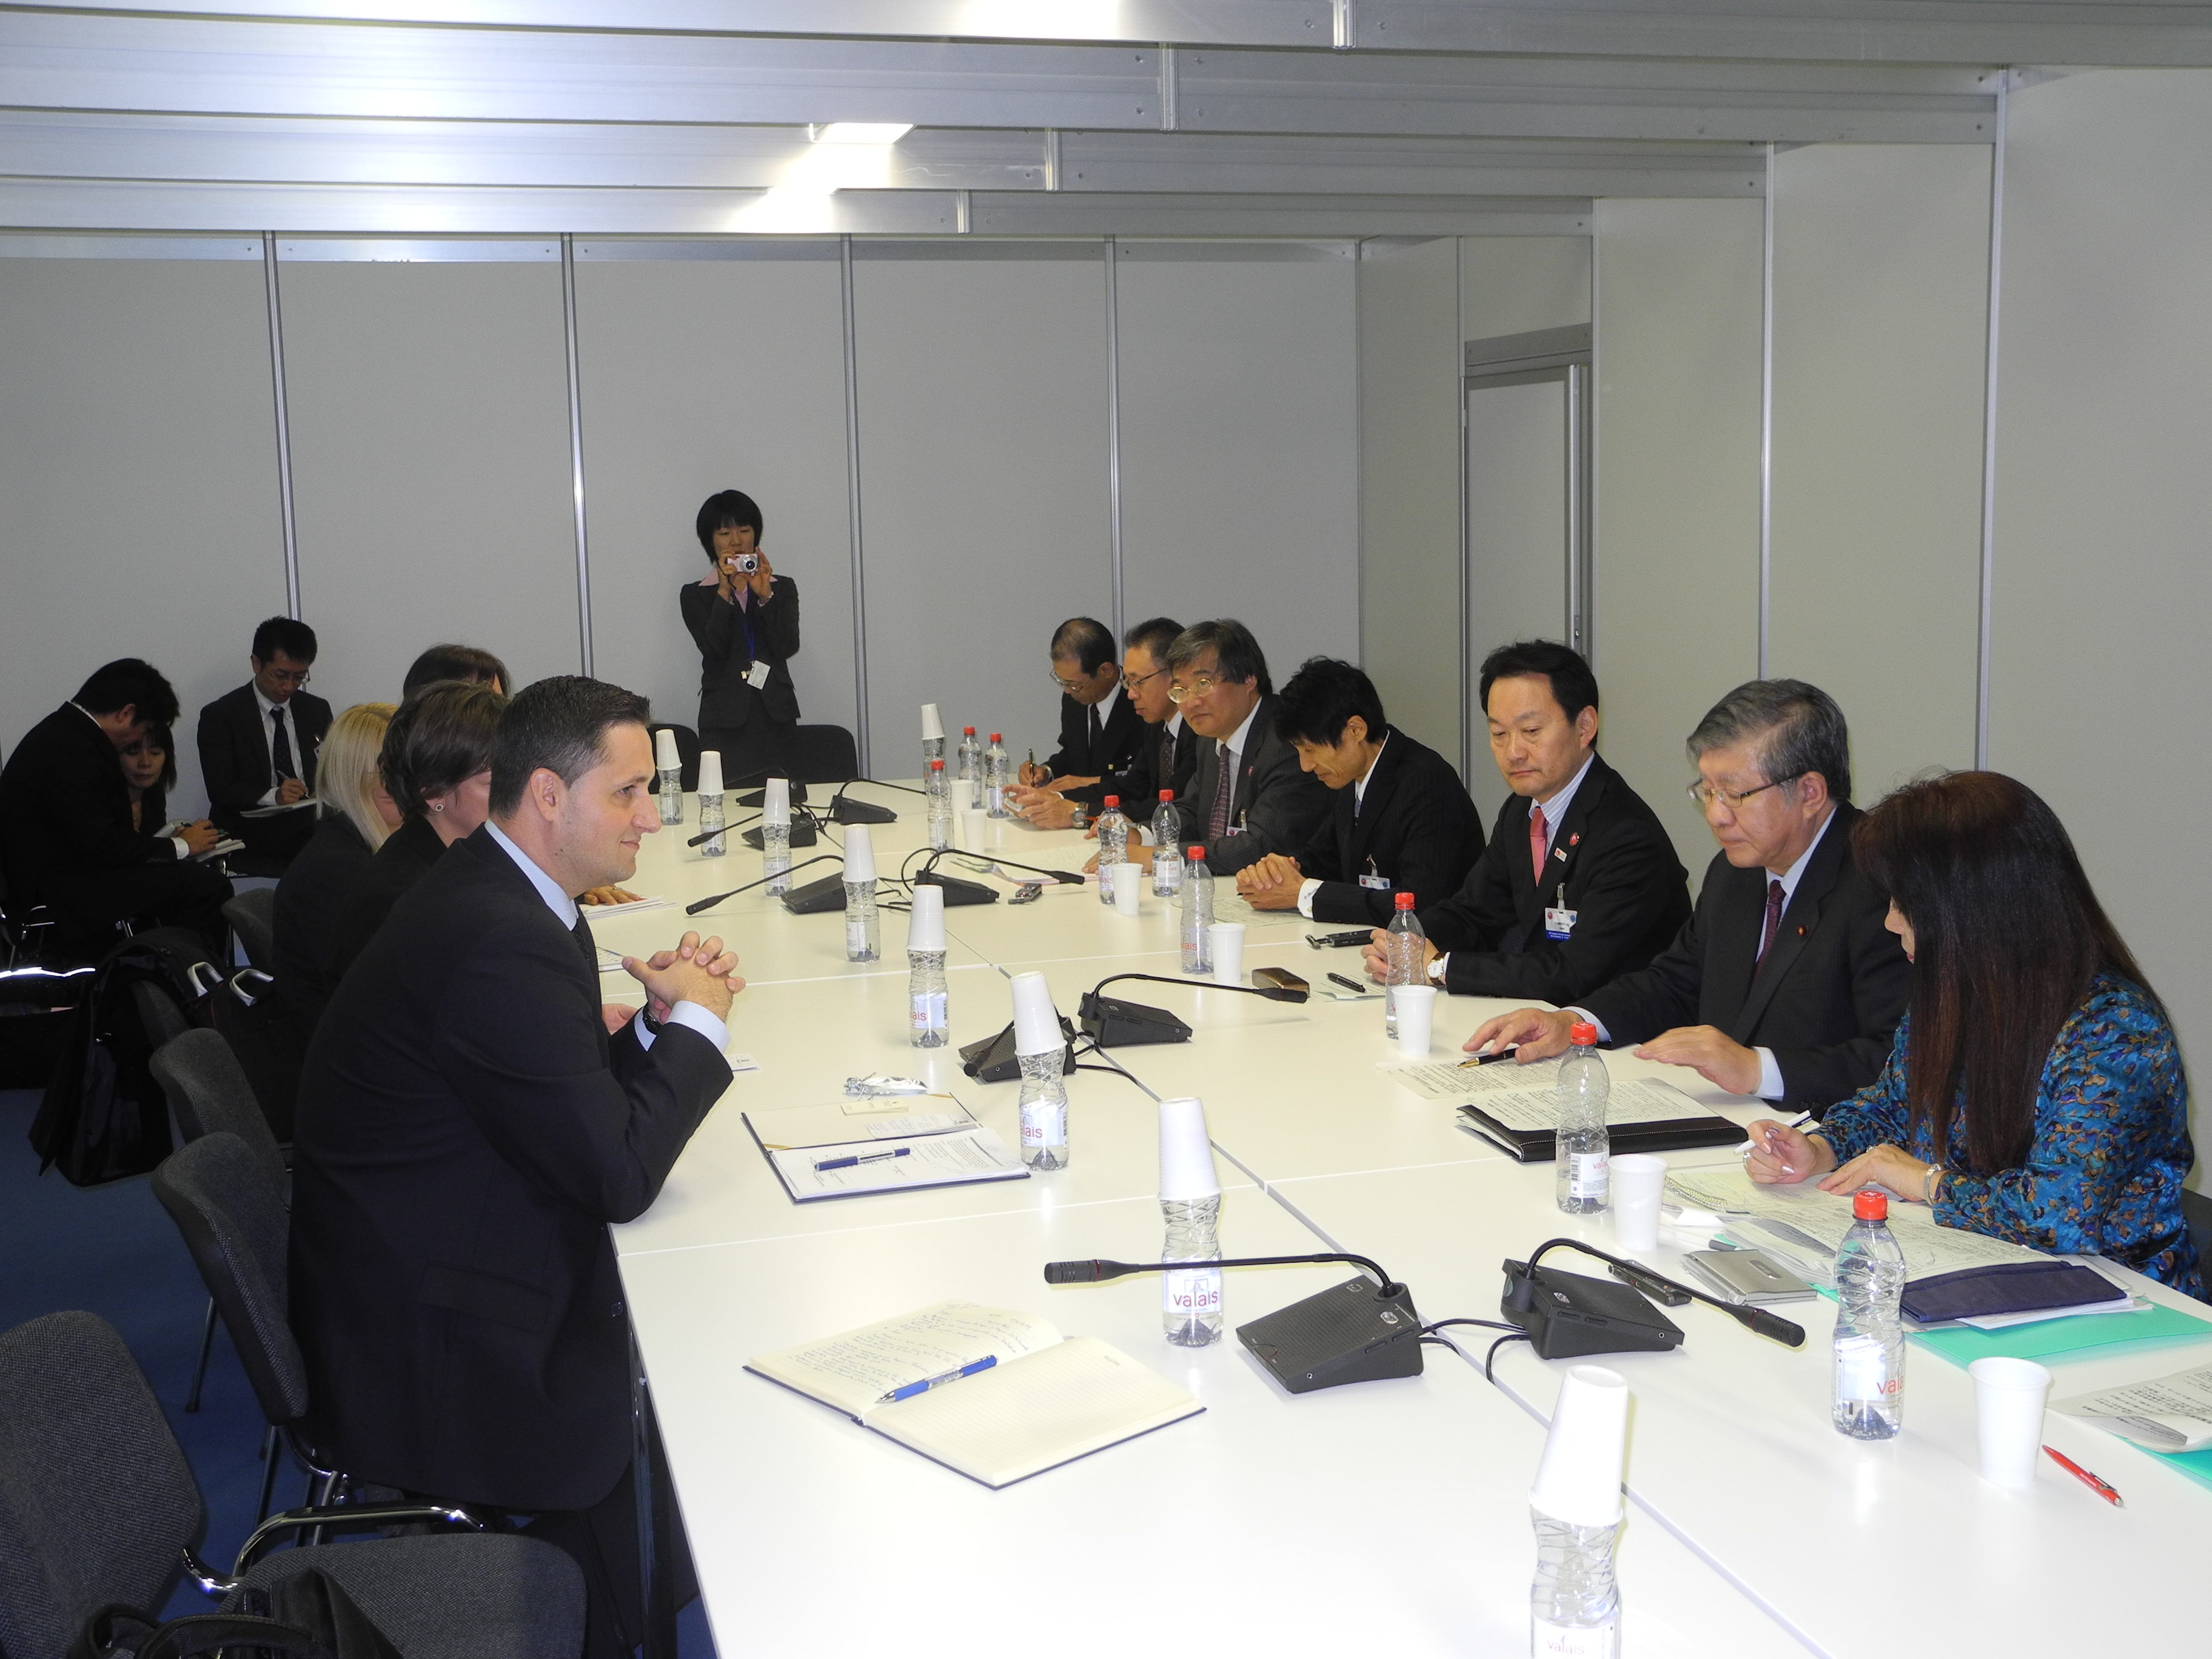 Predsjedatelj Zastupničkog doma dr. Denis Bećirović susreo se s predsjednikom Zastupničkog doma Parlamenta Japana

